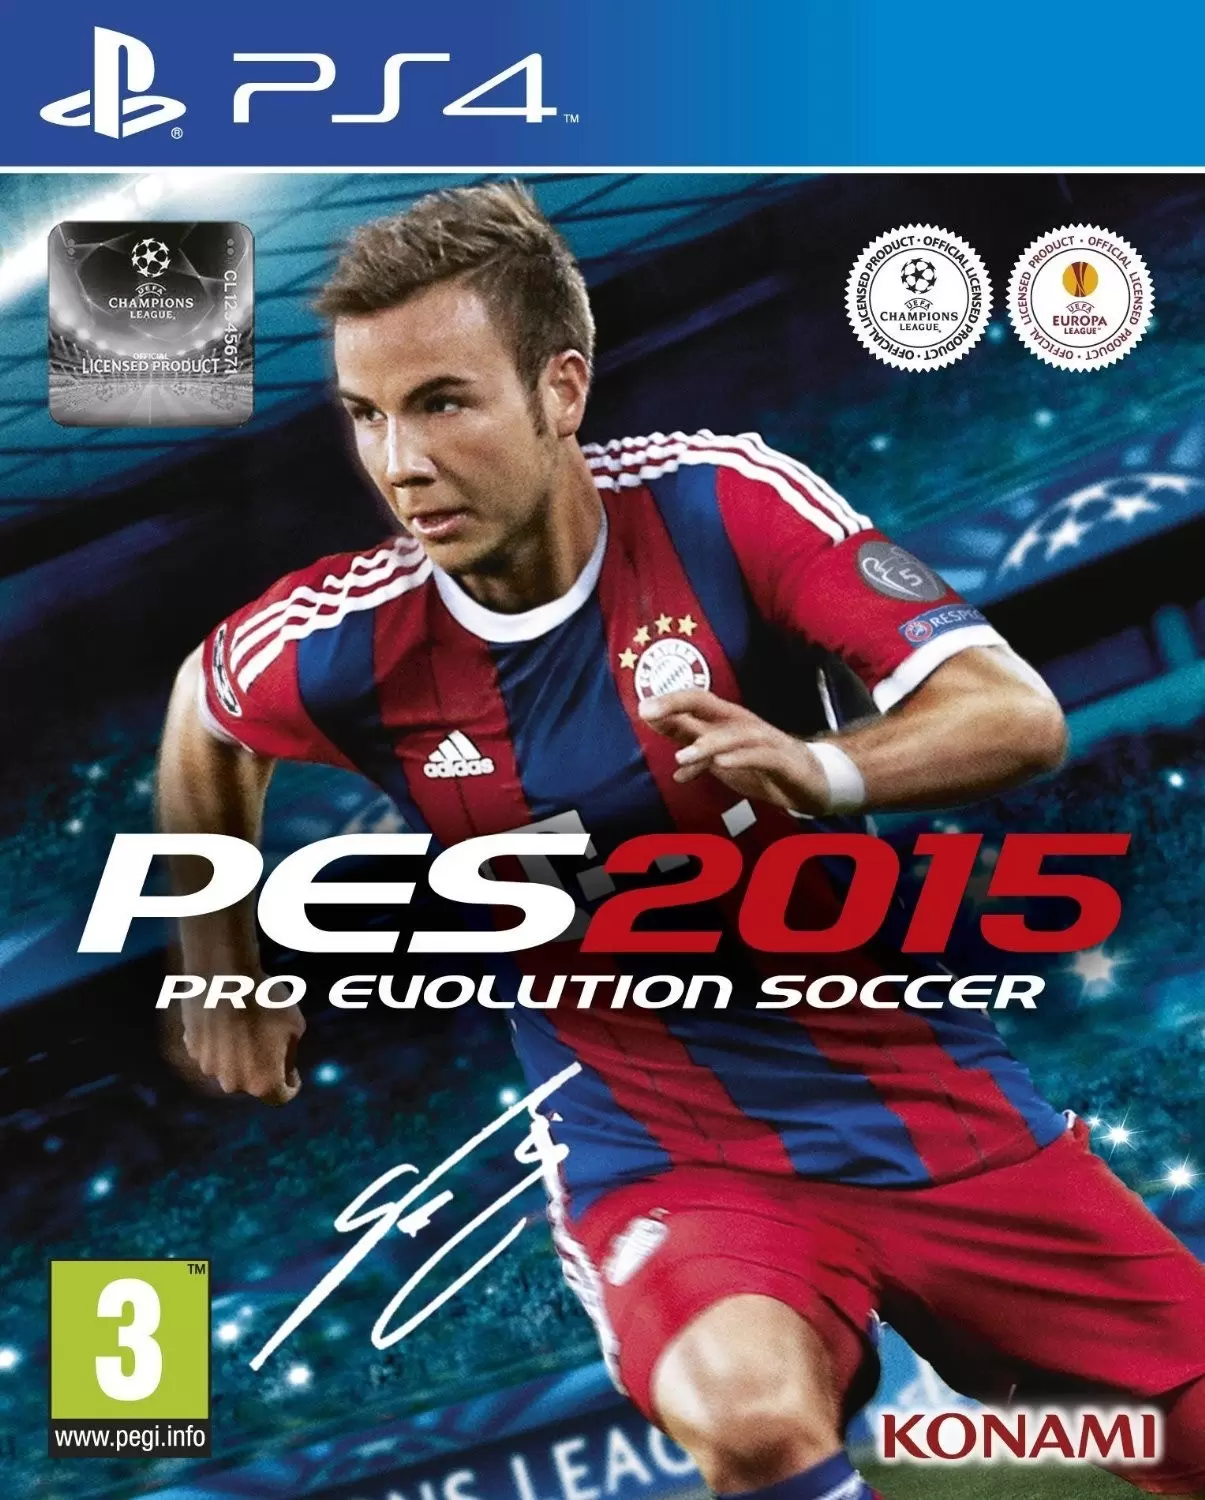 PS4 Games - PES 2015